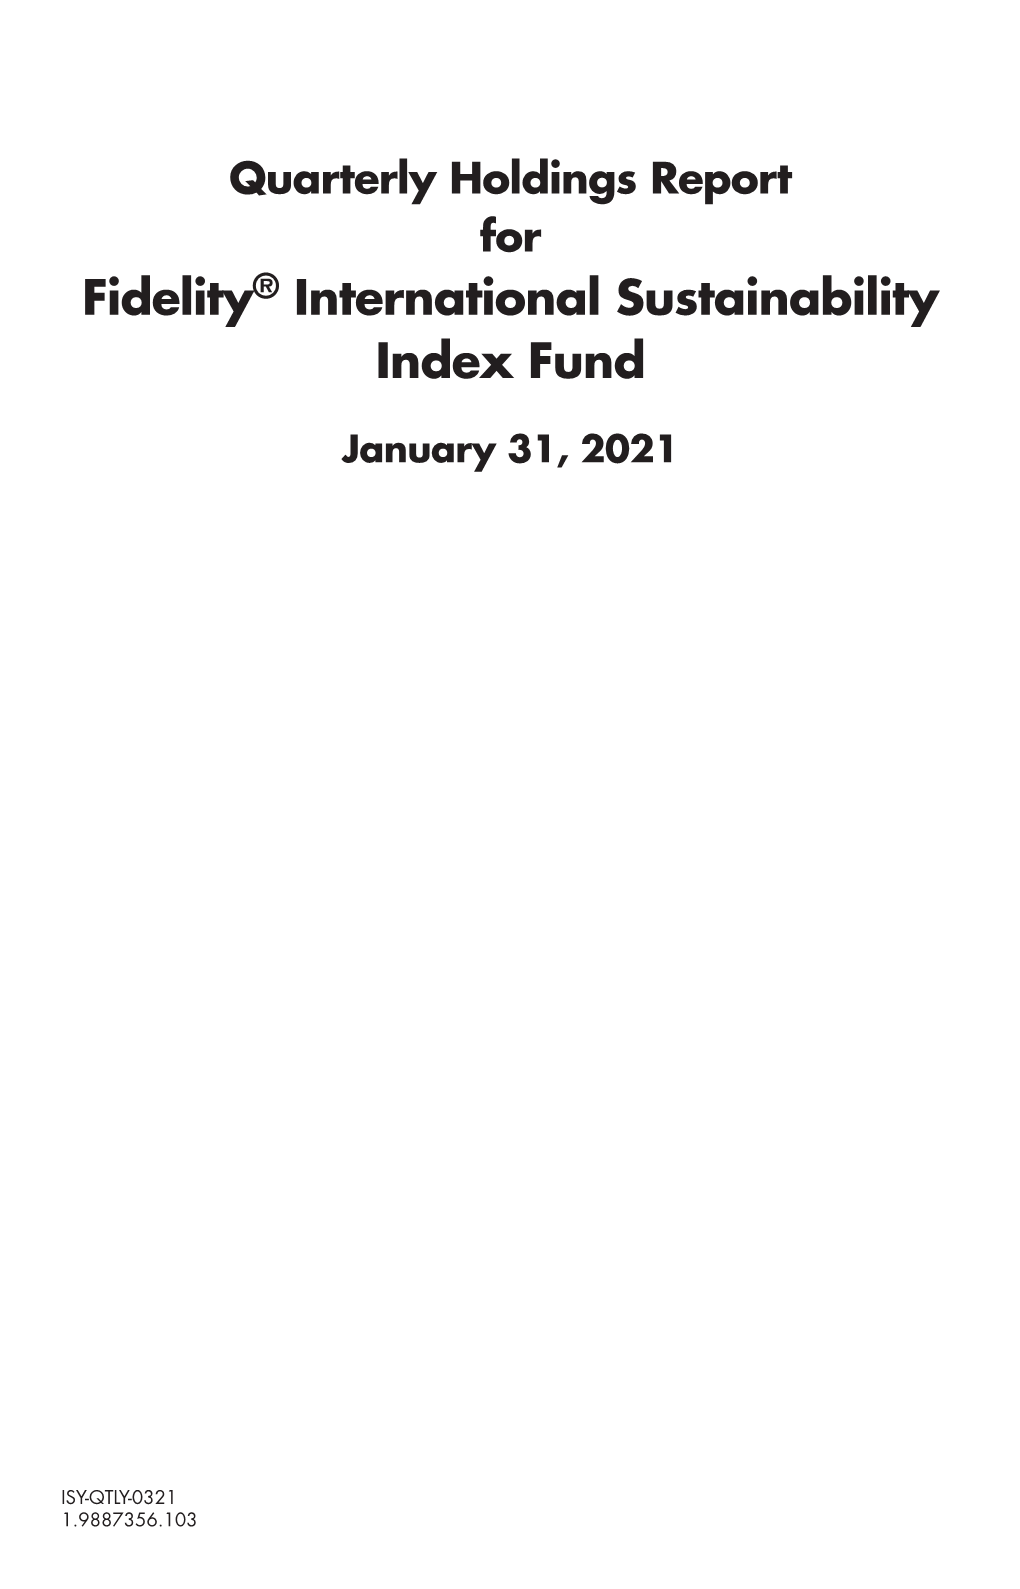 Fidelity® International Sustainability Index Fund